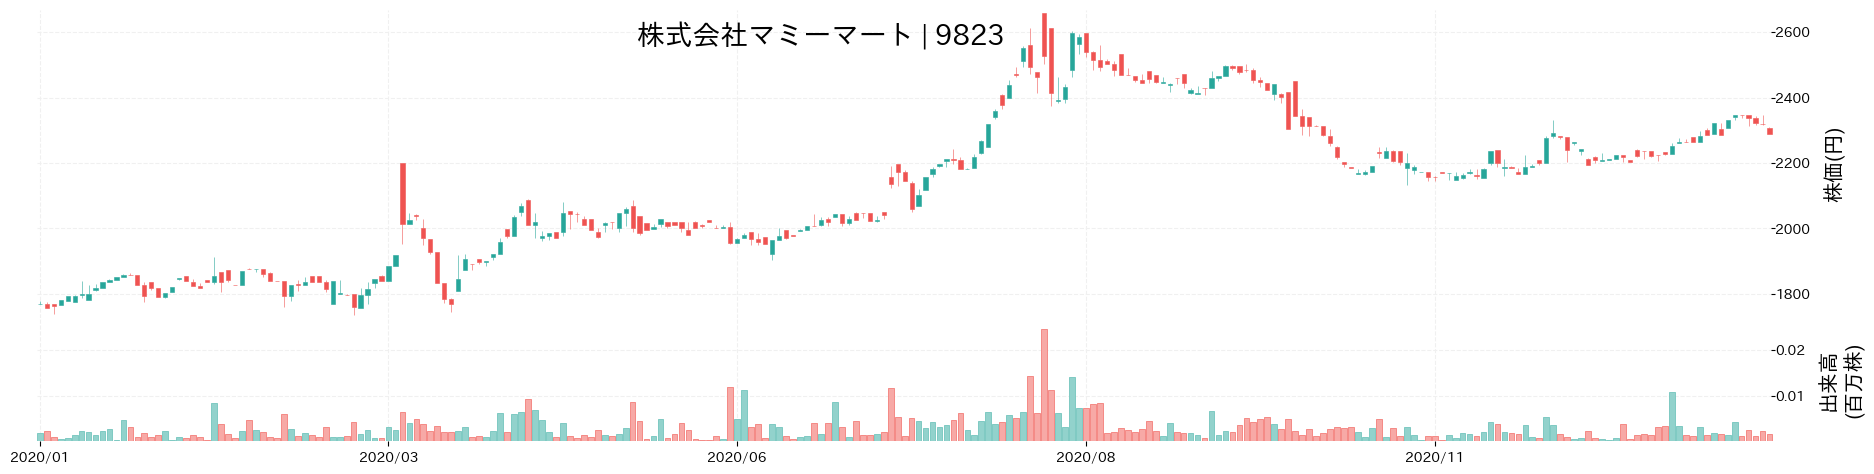 マミーマートの株価推移(2020)